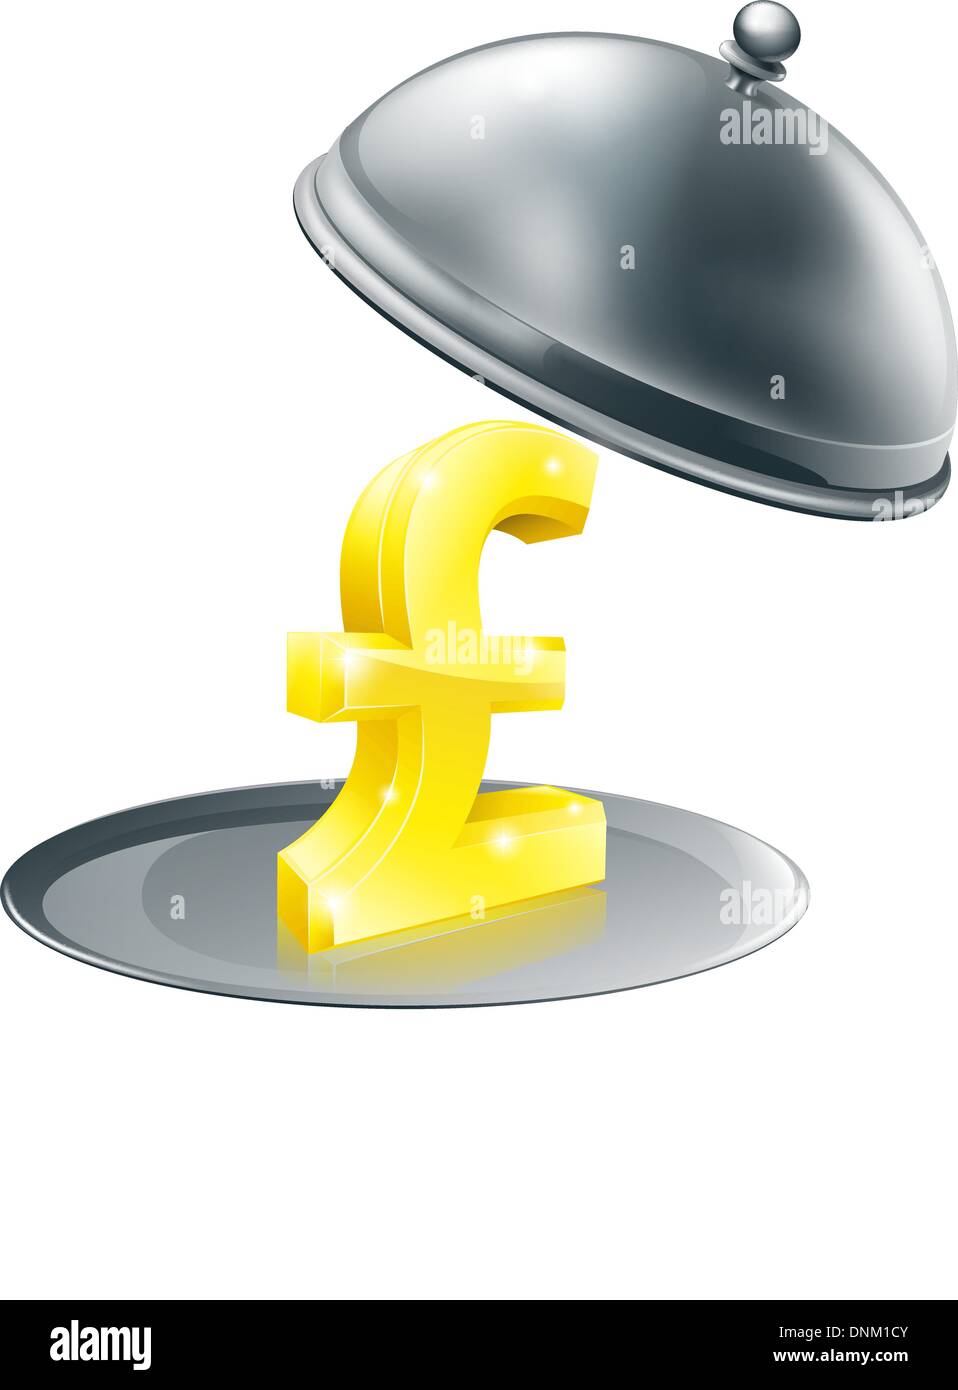 Ein Pfund-Zeichen auf Silbertablett. Konzeptionelle Darstellung für Gelegenheit, Geld zu verdienen oder vielleicht mit teuren Restaurants zu tun Stock Vektor